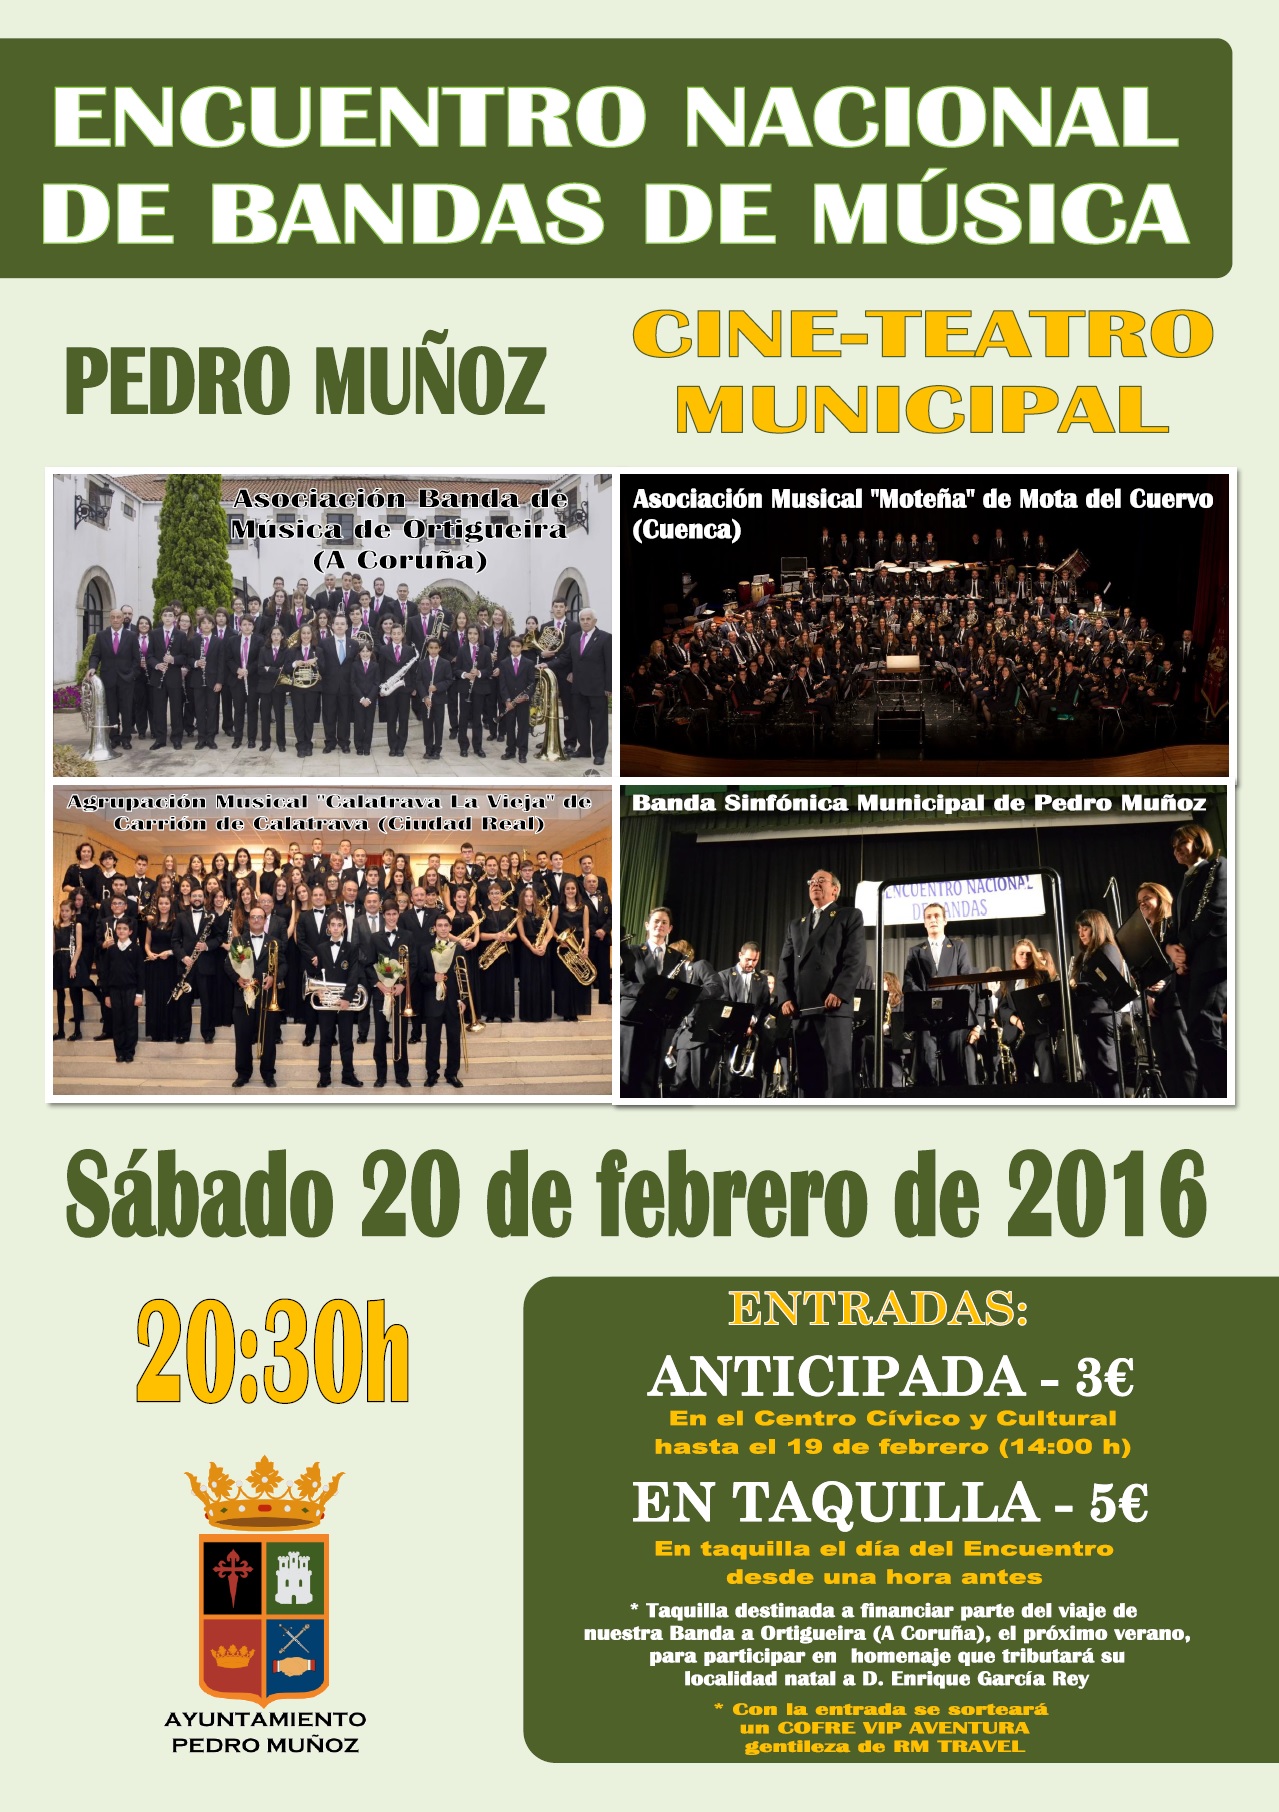 Cuatro agrupaciones participarán en el encuentro nacional de bandas de música de Pedro Muñoz